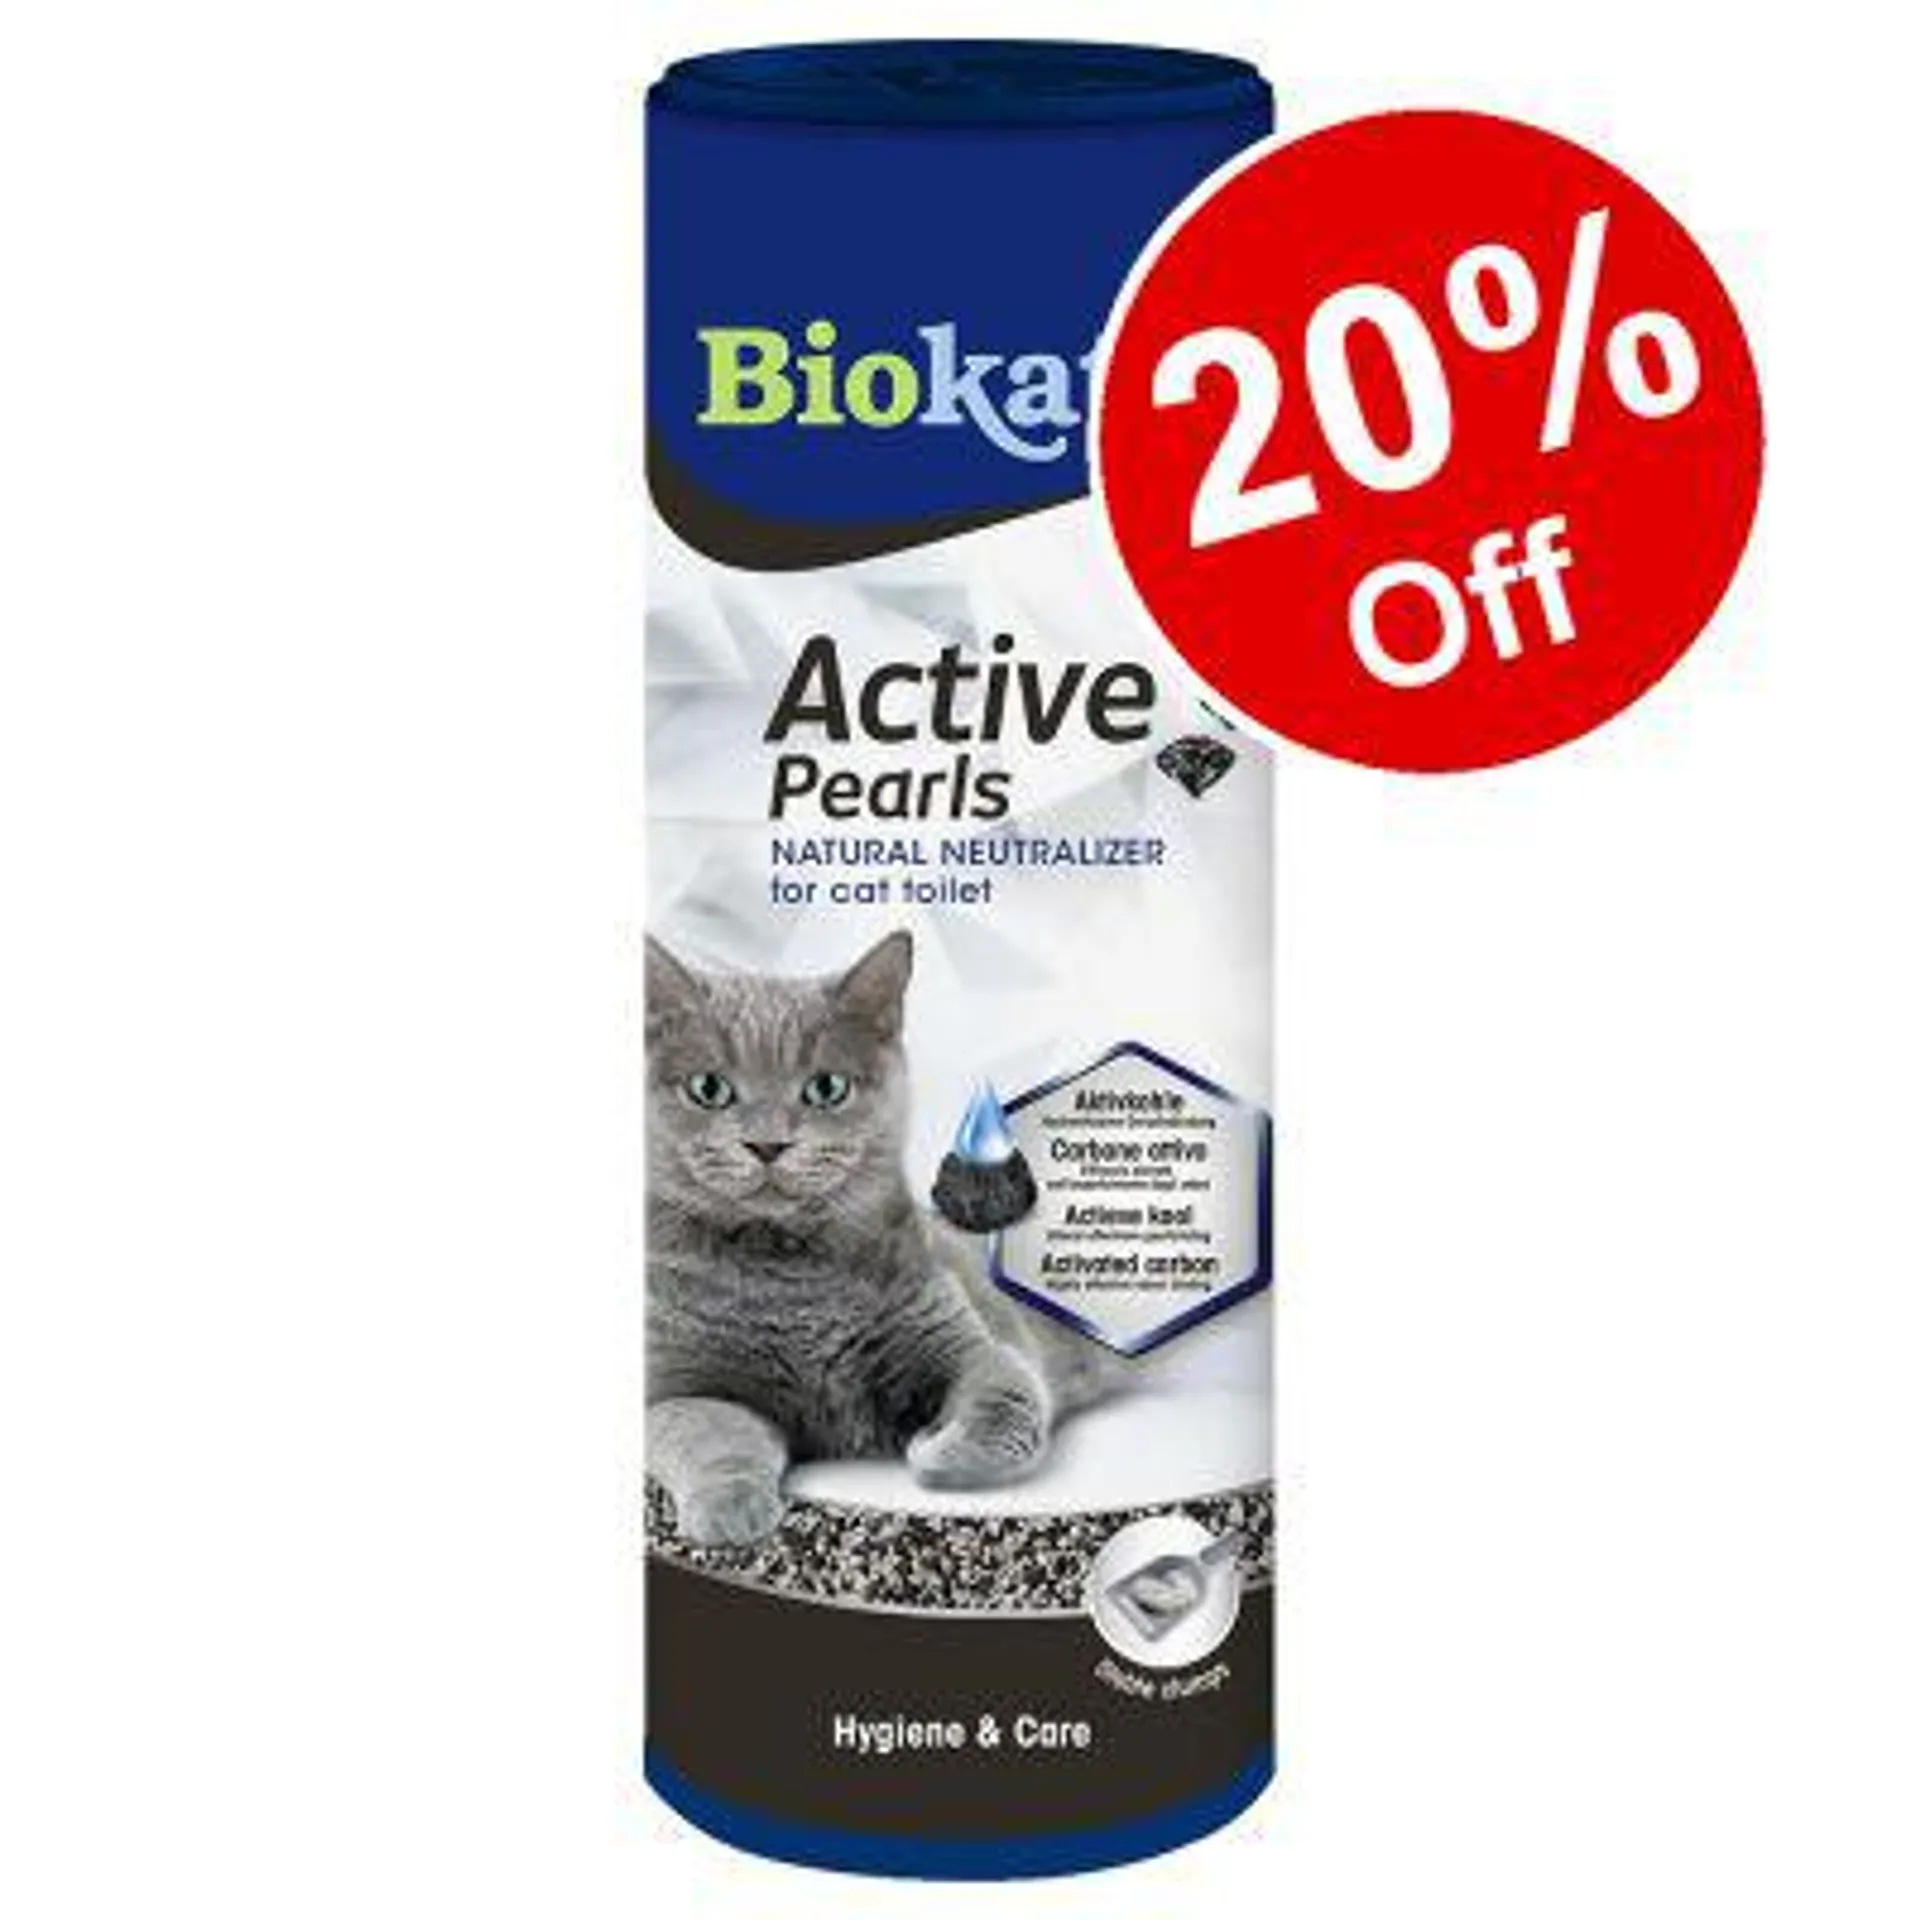 Biokat's Active Pearls - 20% Off!*